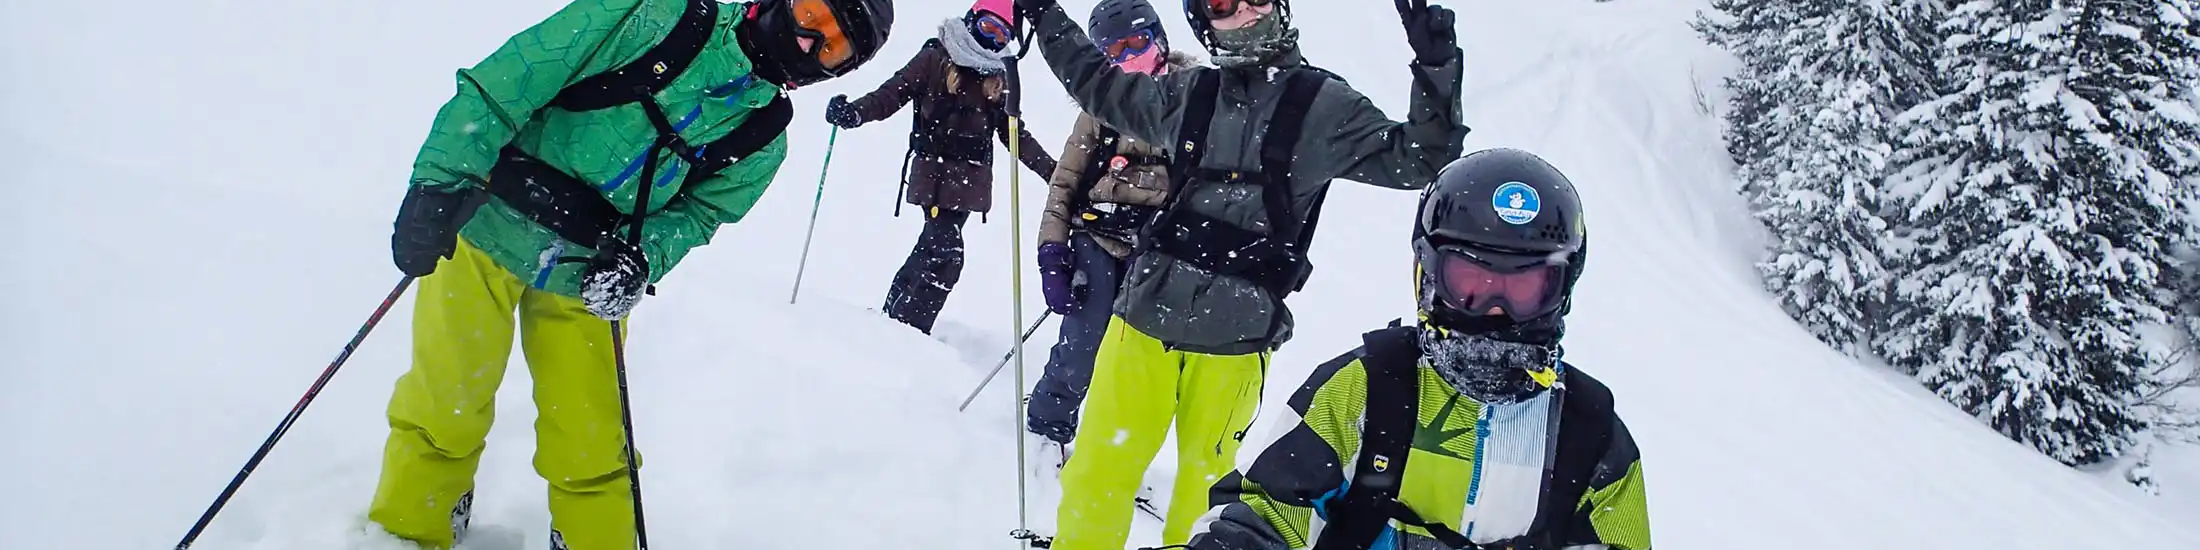 Vijf jongeren in skipakken, met skihelmen en skibrillen staan in de diepe sneeuw en poseren voor de camera